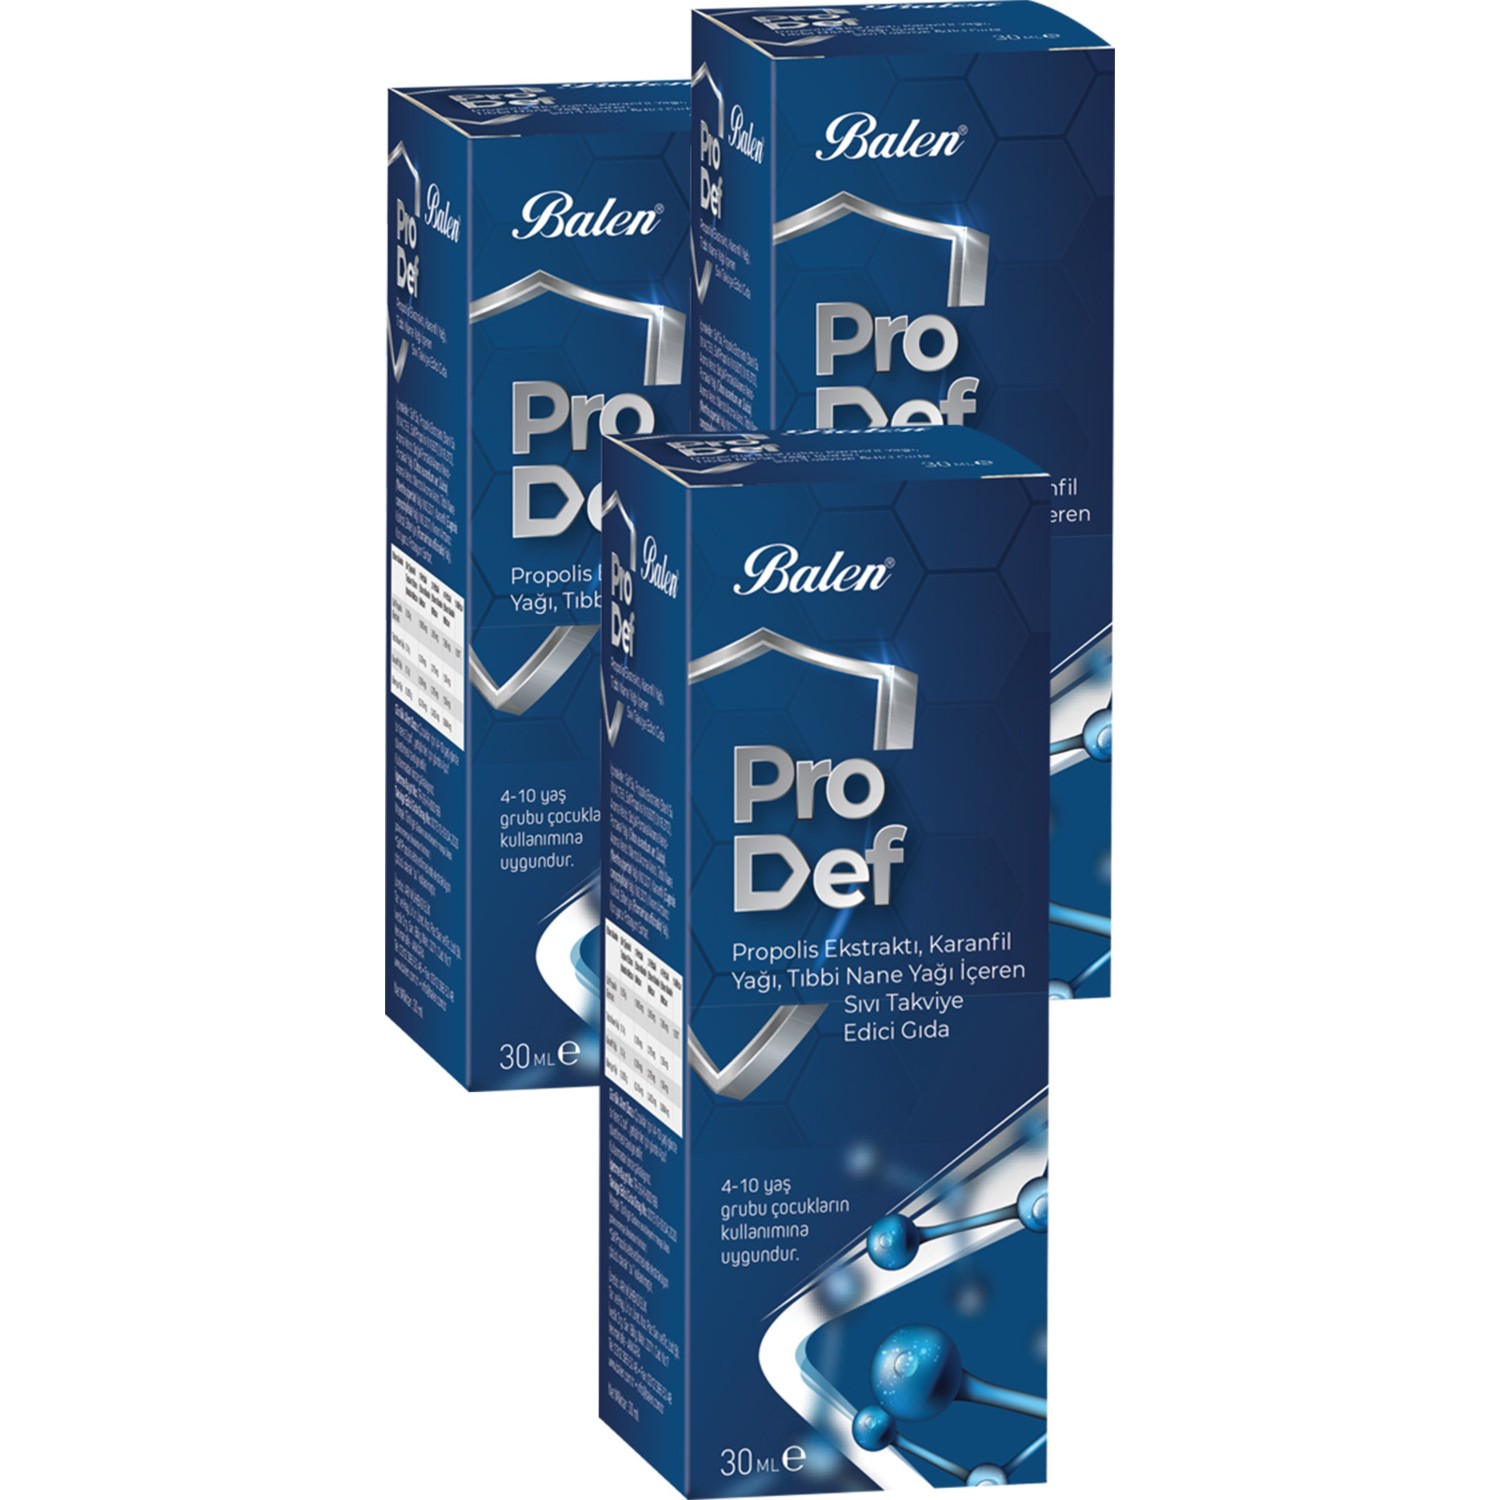 Спрей для горла с экстрактом прополиса Balen Pro Def Spray Supplement, 3 упаковки по 30 мл спрей для горла prodef с прополисом и маслом гвоздики 3 упаковки по 30 мл